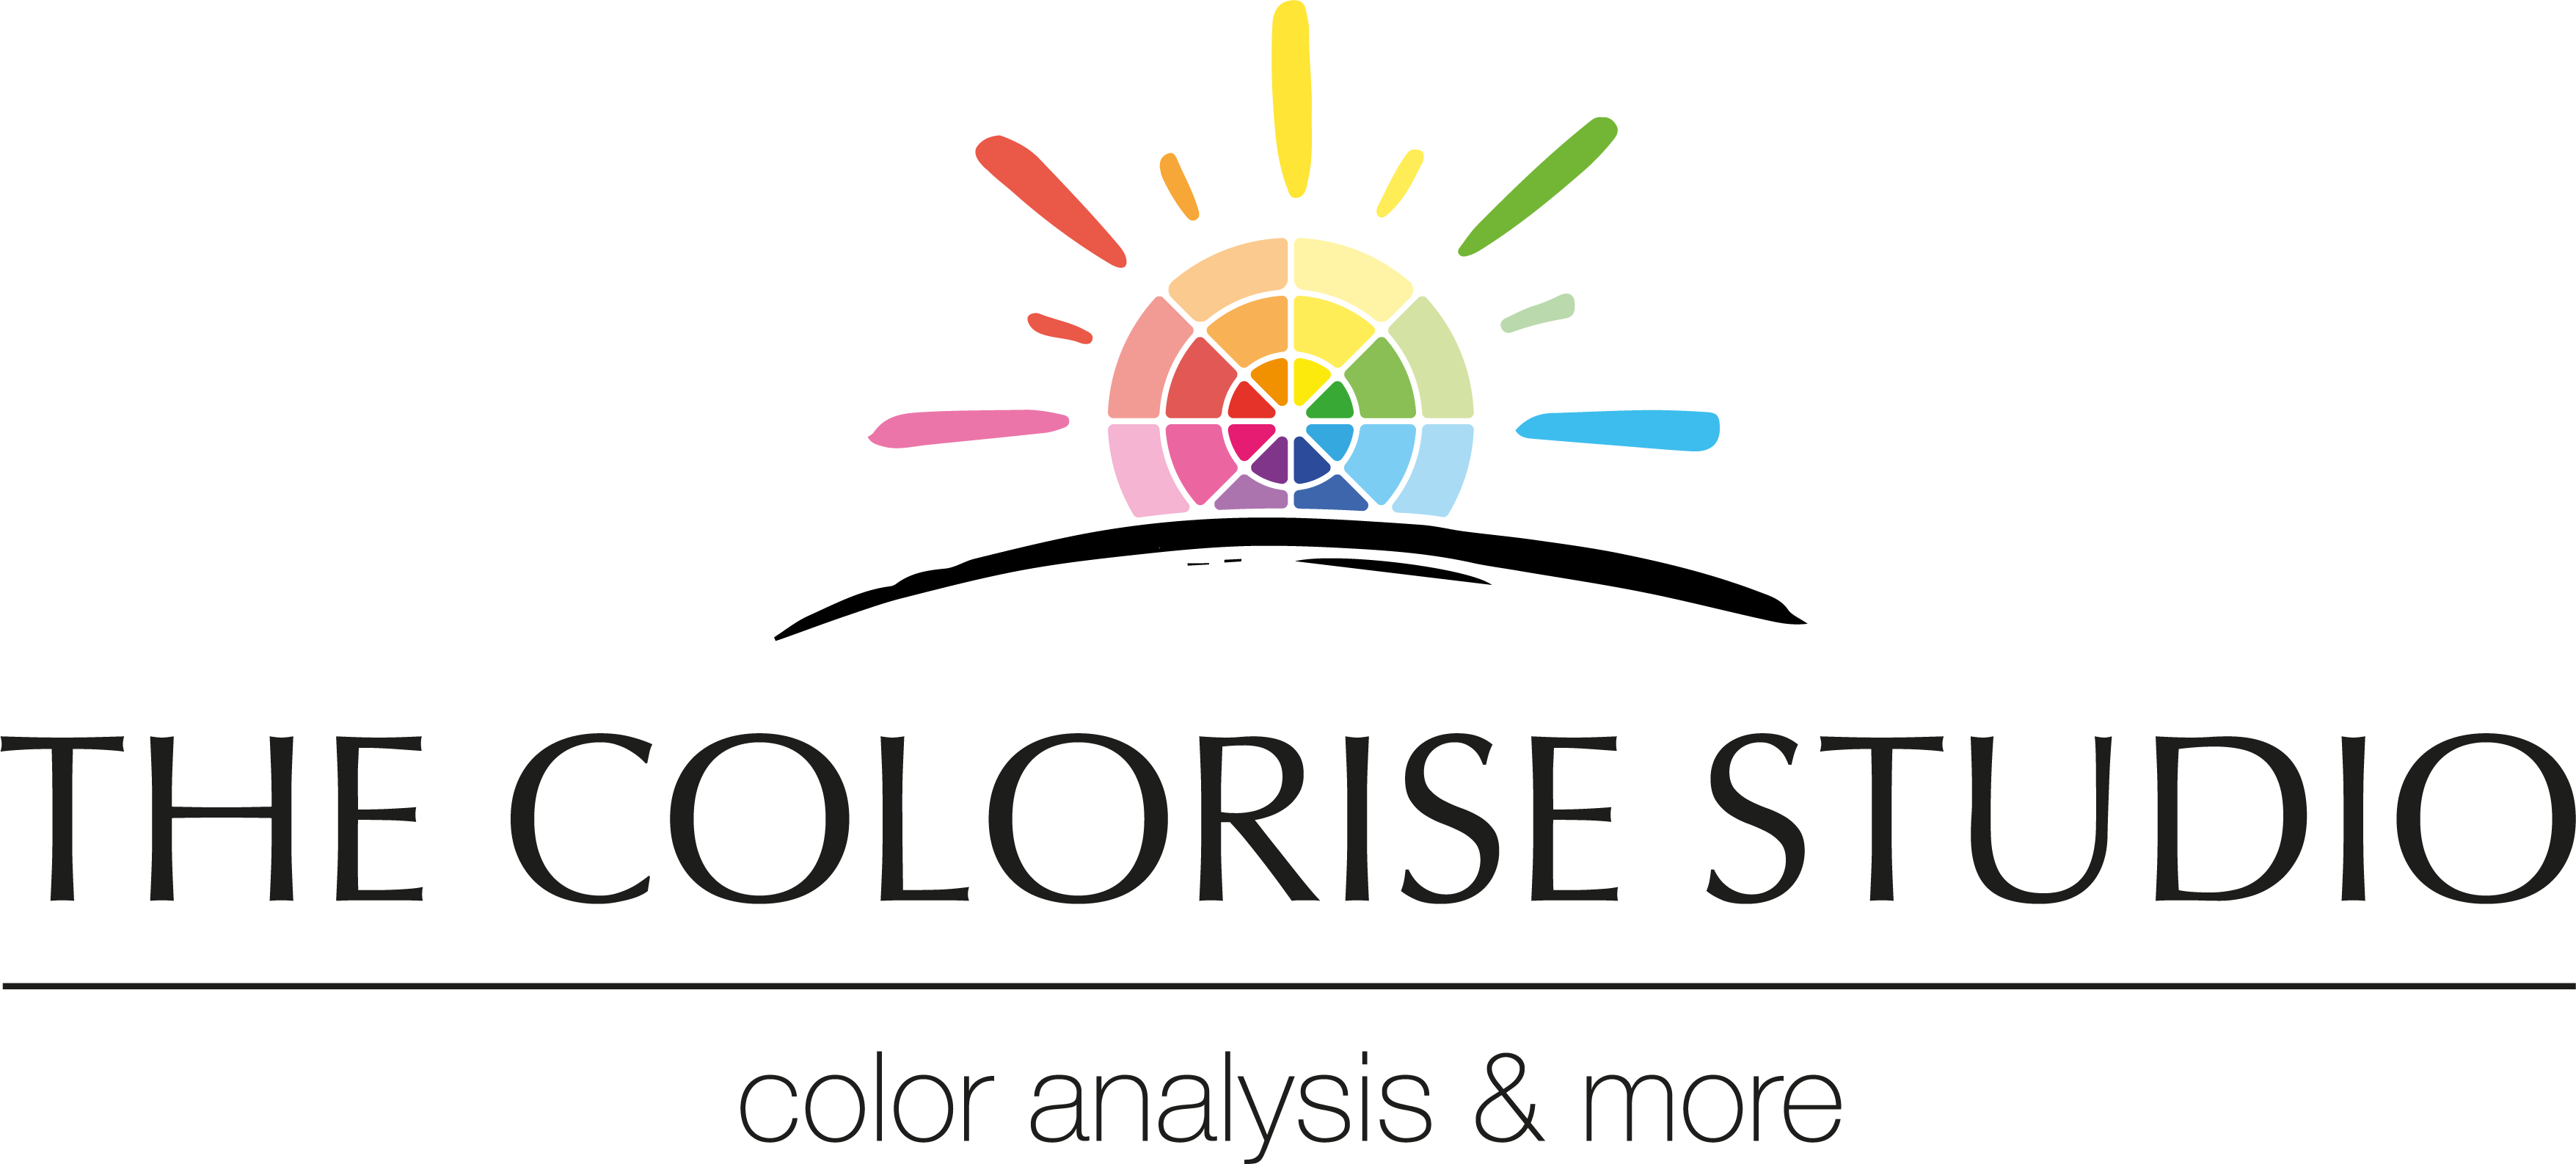 The Colorise Studio